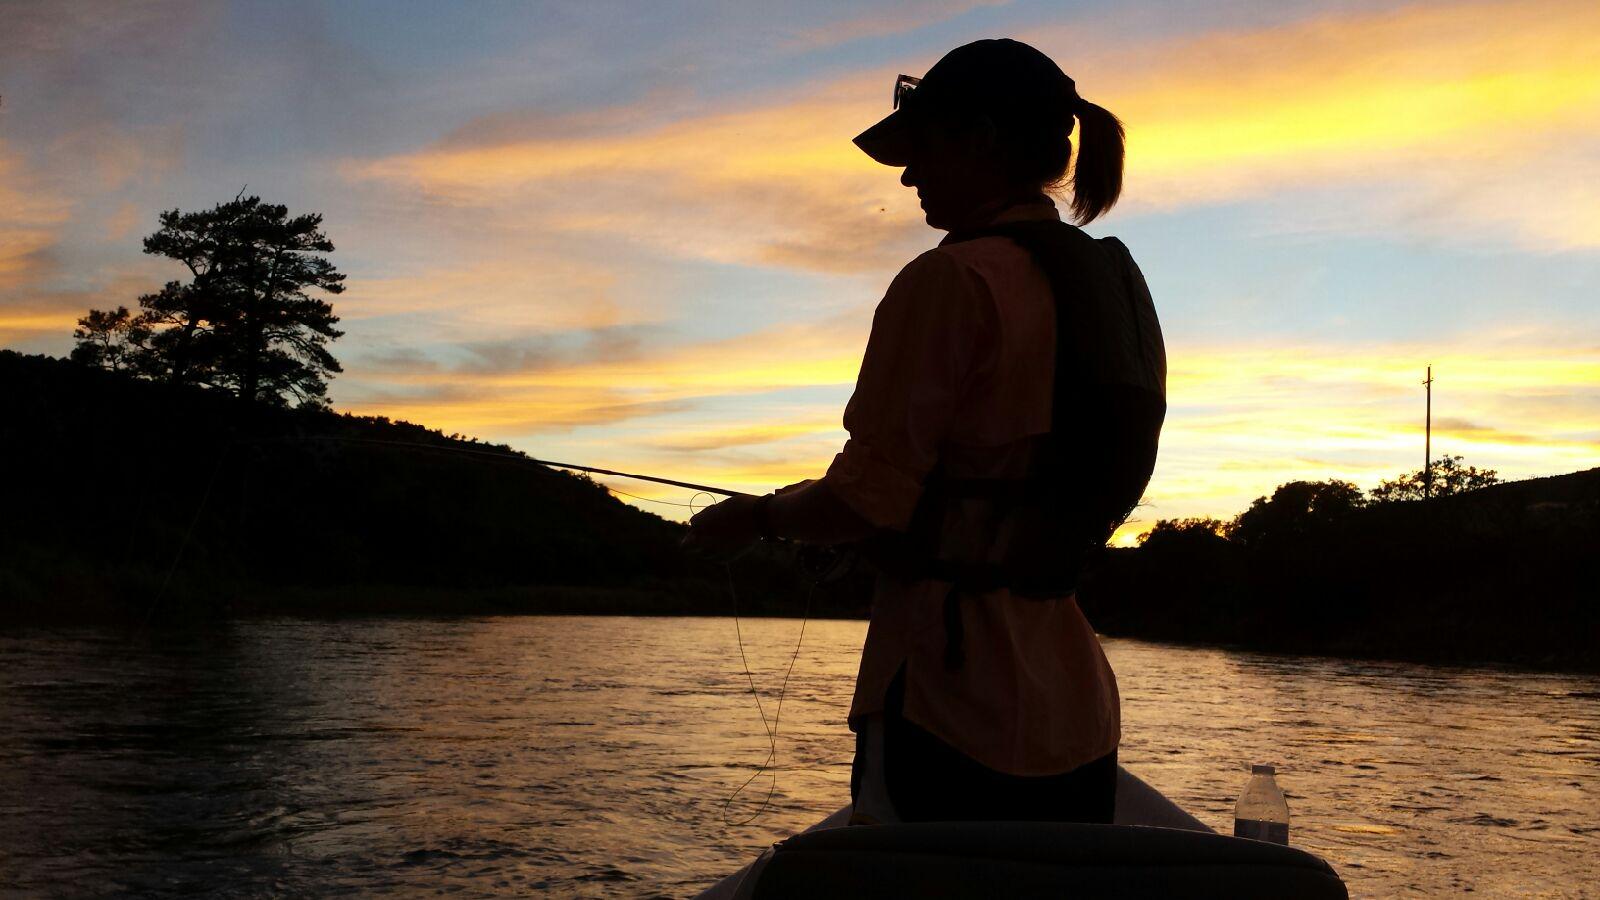 dusk fishing